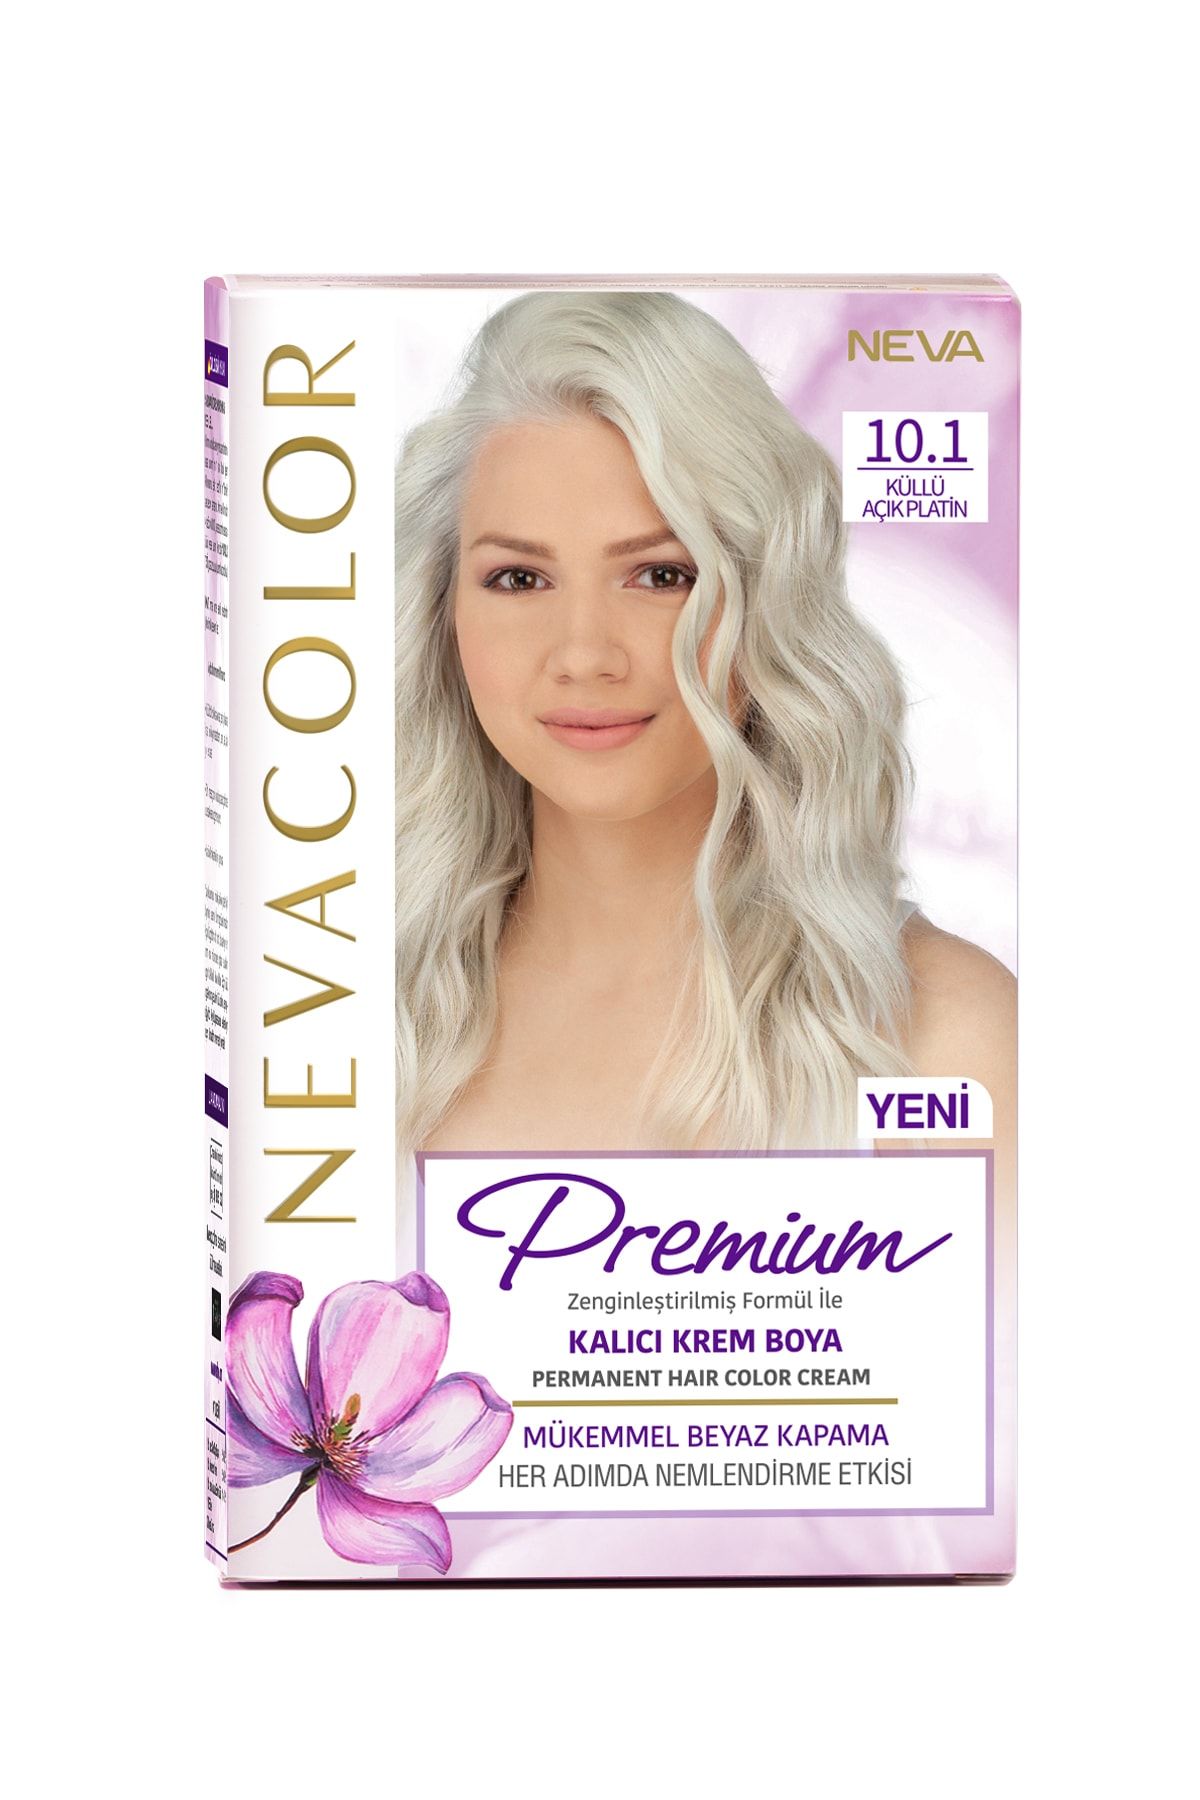 NEVA KOZMETİK Nevacolor Premium Kalıcı Krem Set Boya 10.1 Küllü Açık Platin